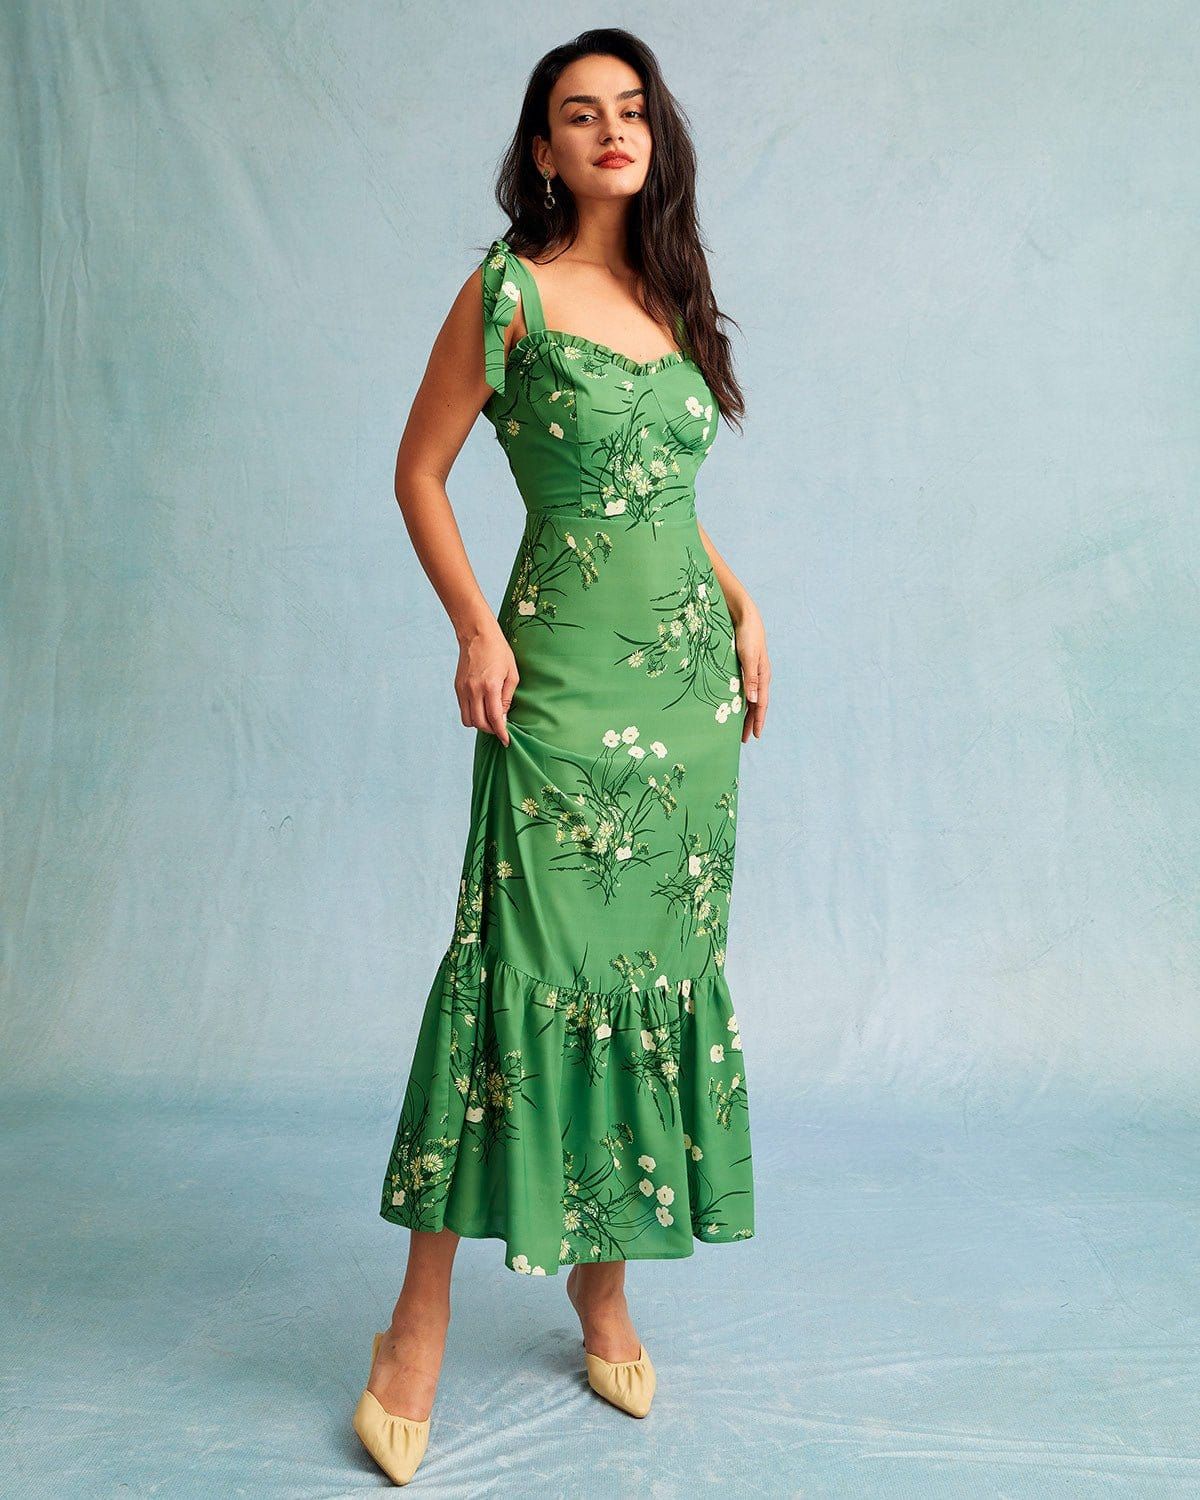 The Green Floral Tie Shoulder Ruffle Maxi Dress - Green Sleeveless Ruffle Floral Maxi Dress - Gre... | rihoas.com